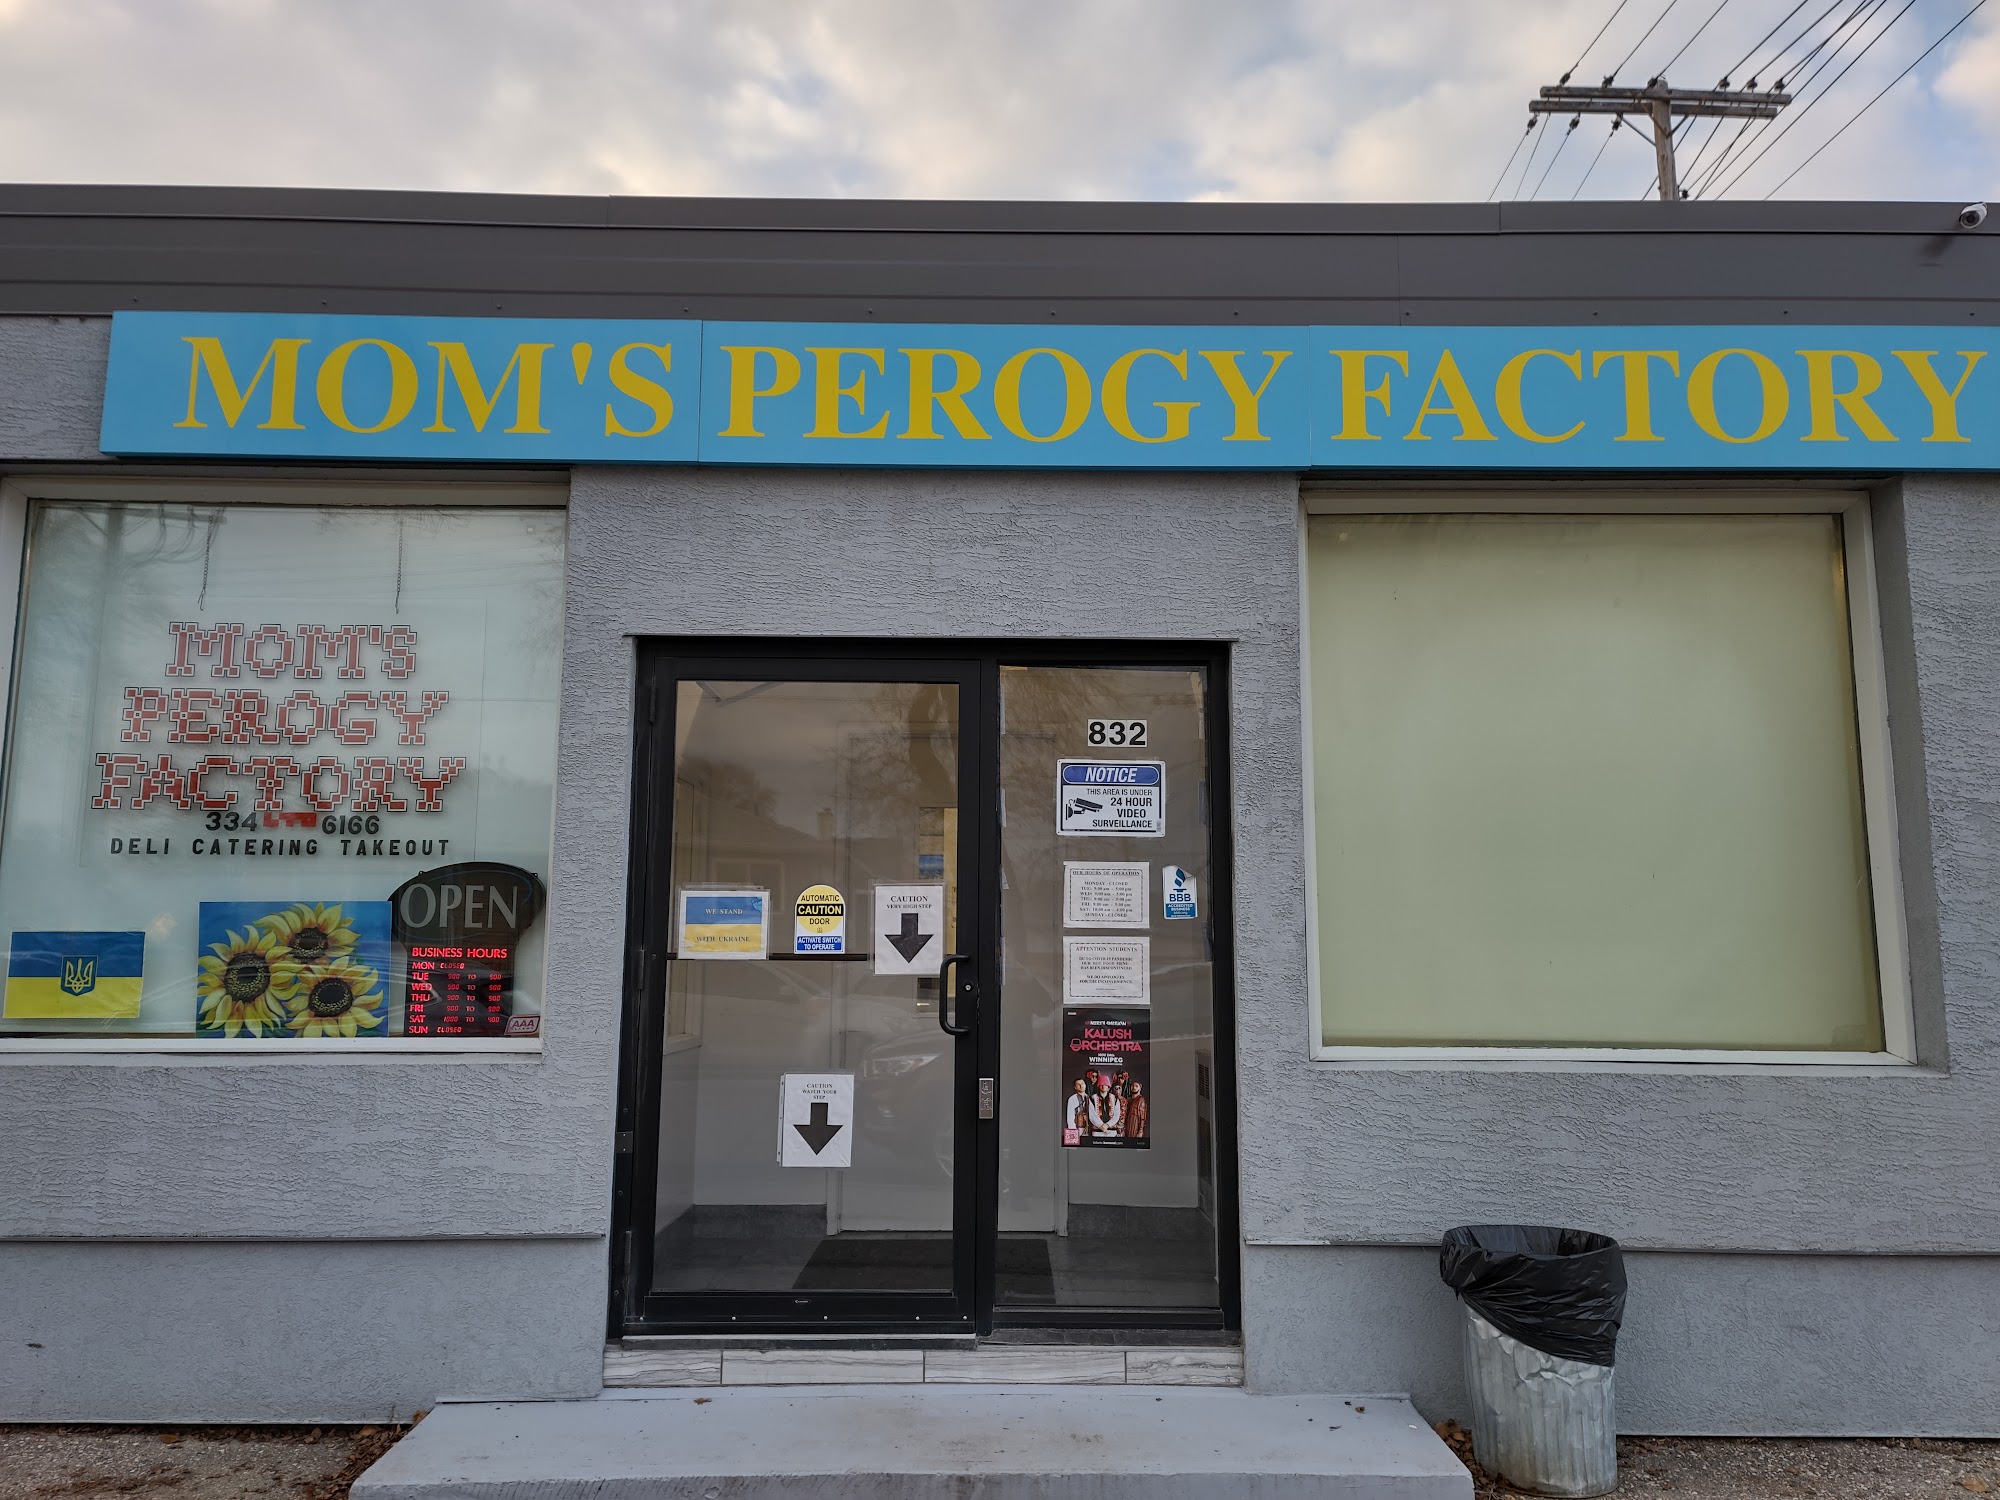 Mom's Perogy Factory